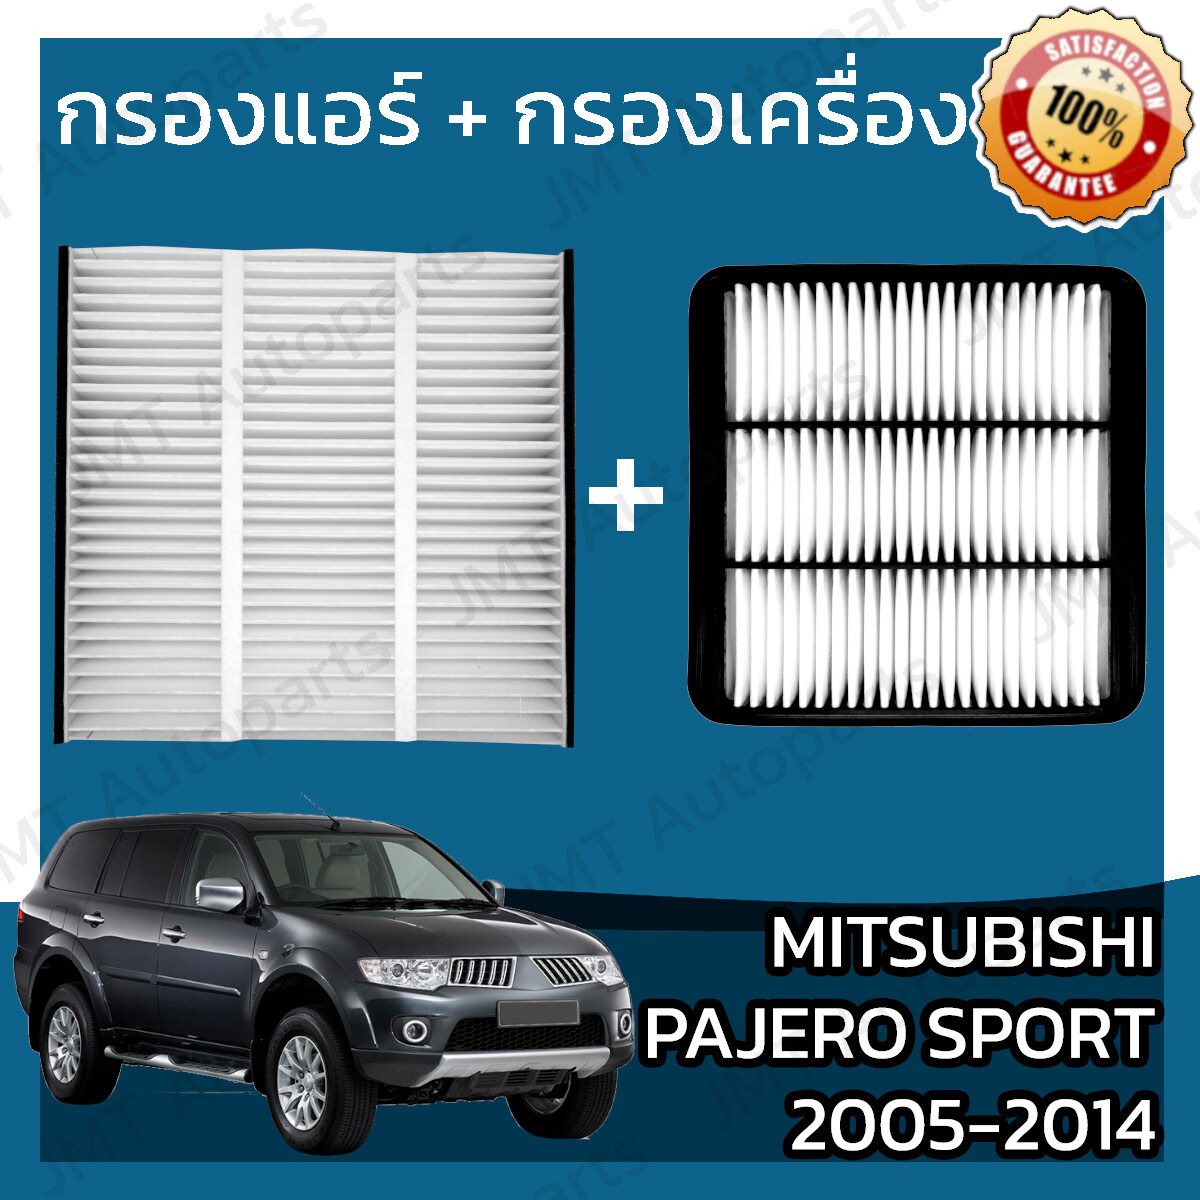 กรองแอร์ + กรองอากาศเครื่อง มิตซูบิชิ ปาเจโร ปี 2005-2014 Mitsubishi Pajero A/C Car Filter + Engine Air Filter ปาเจโร่